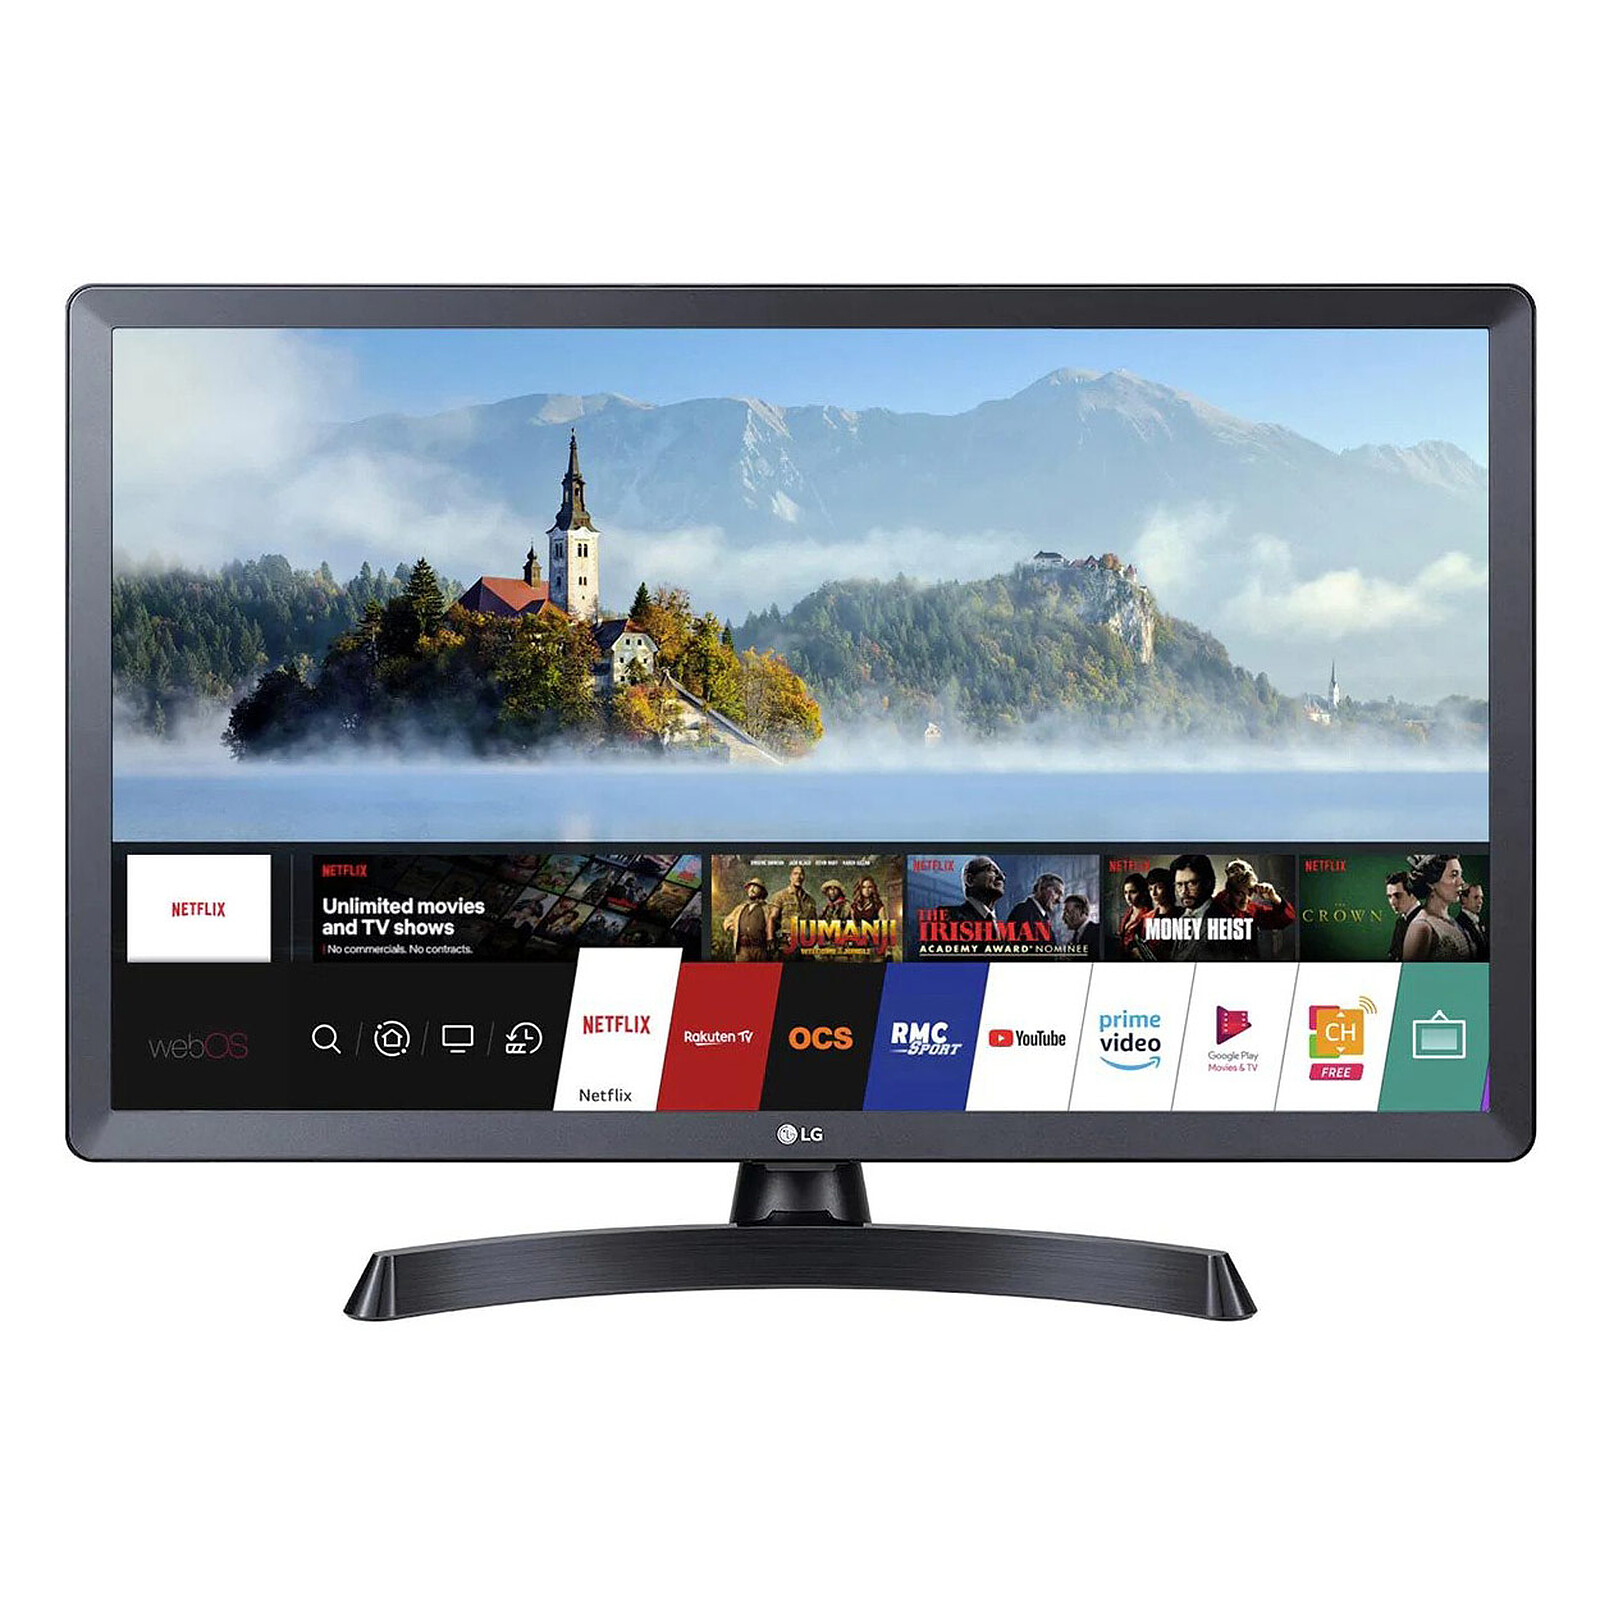 Fernseher LG 28TQ515S-PZ 28 Zoll / LED HD / Smart TV /WiFi